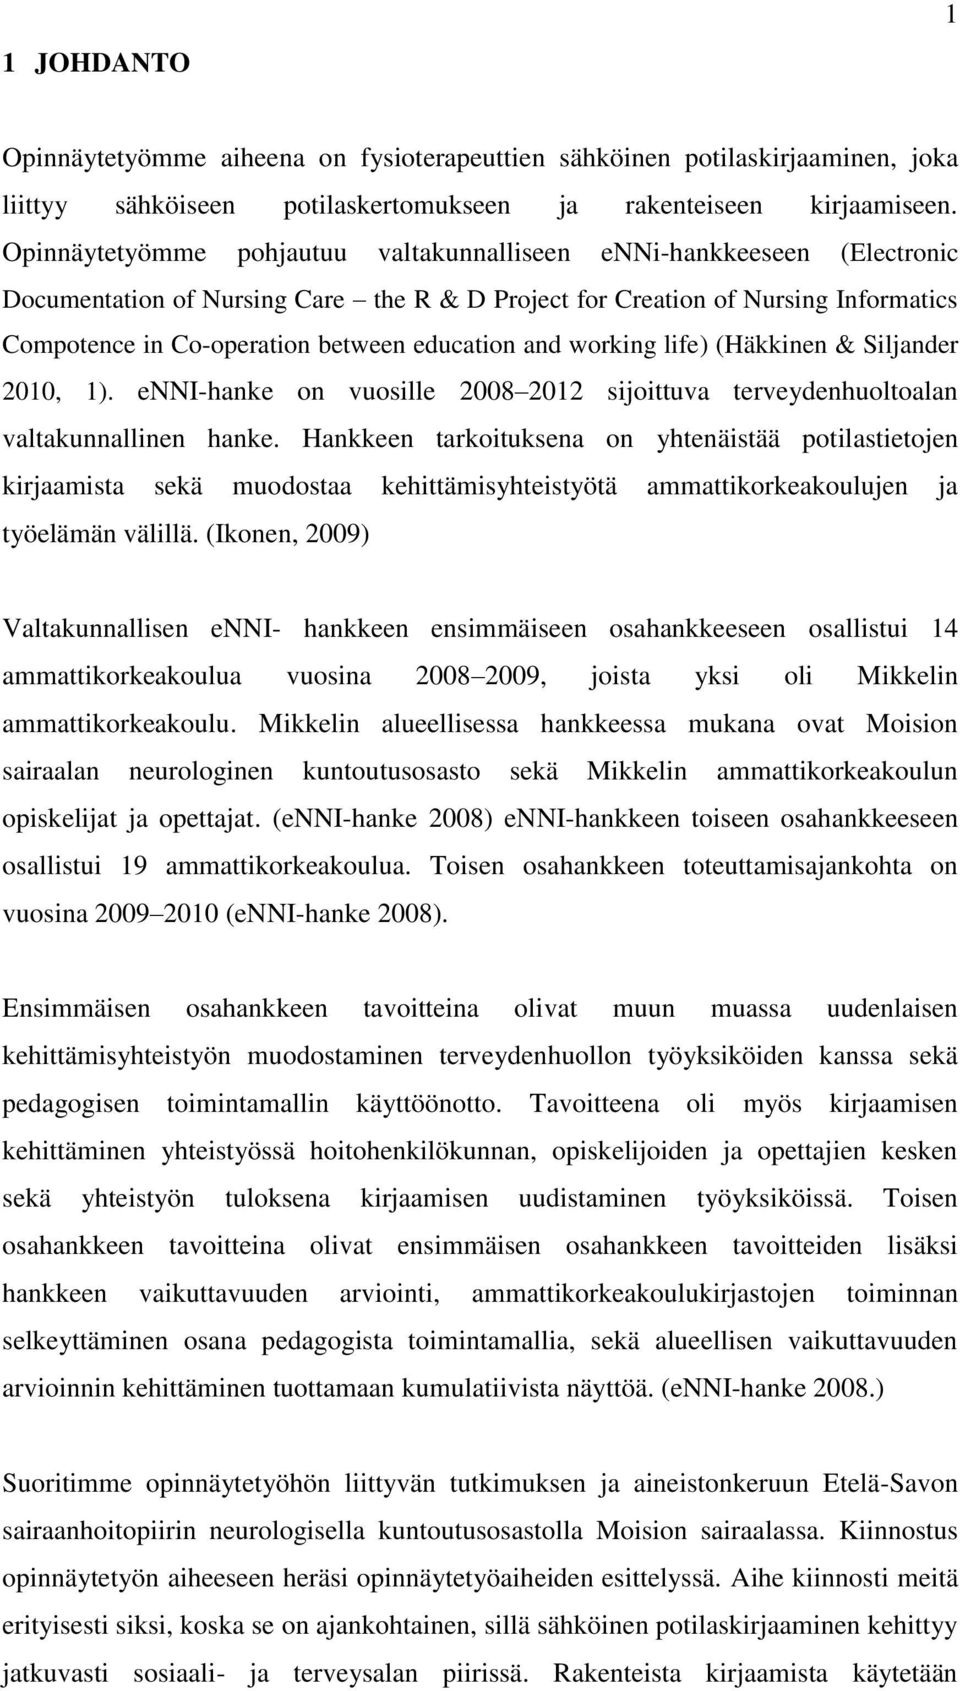 education and working life) (Häkkinen & Siljander 2010, 1). enni-hanke on vuosille 2008 2012 sijoittuva terveydenhuoltoalan valtakunnallinen hanke.